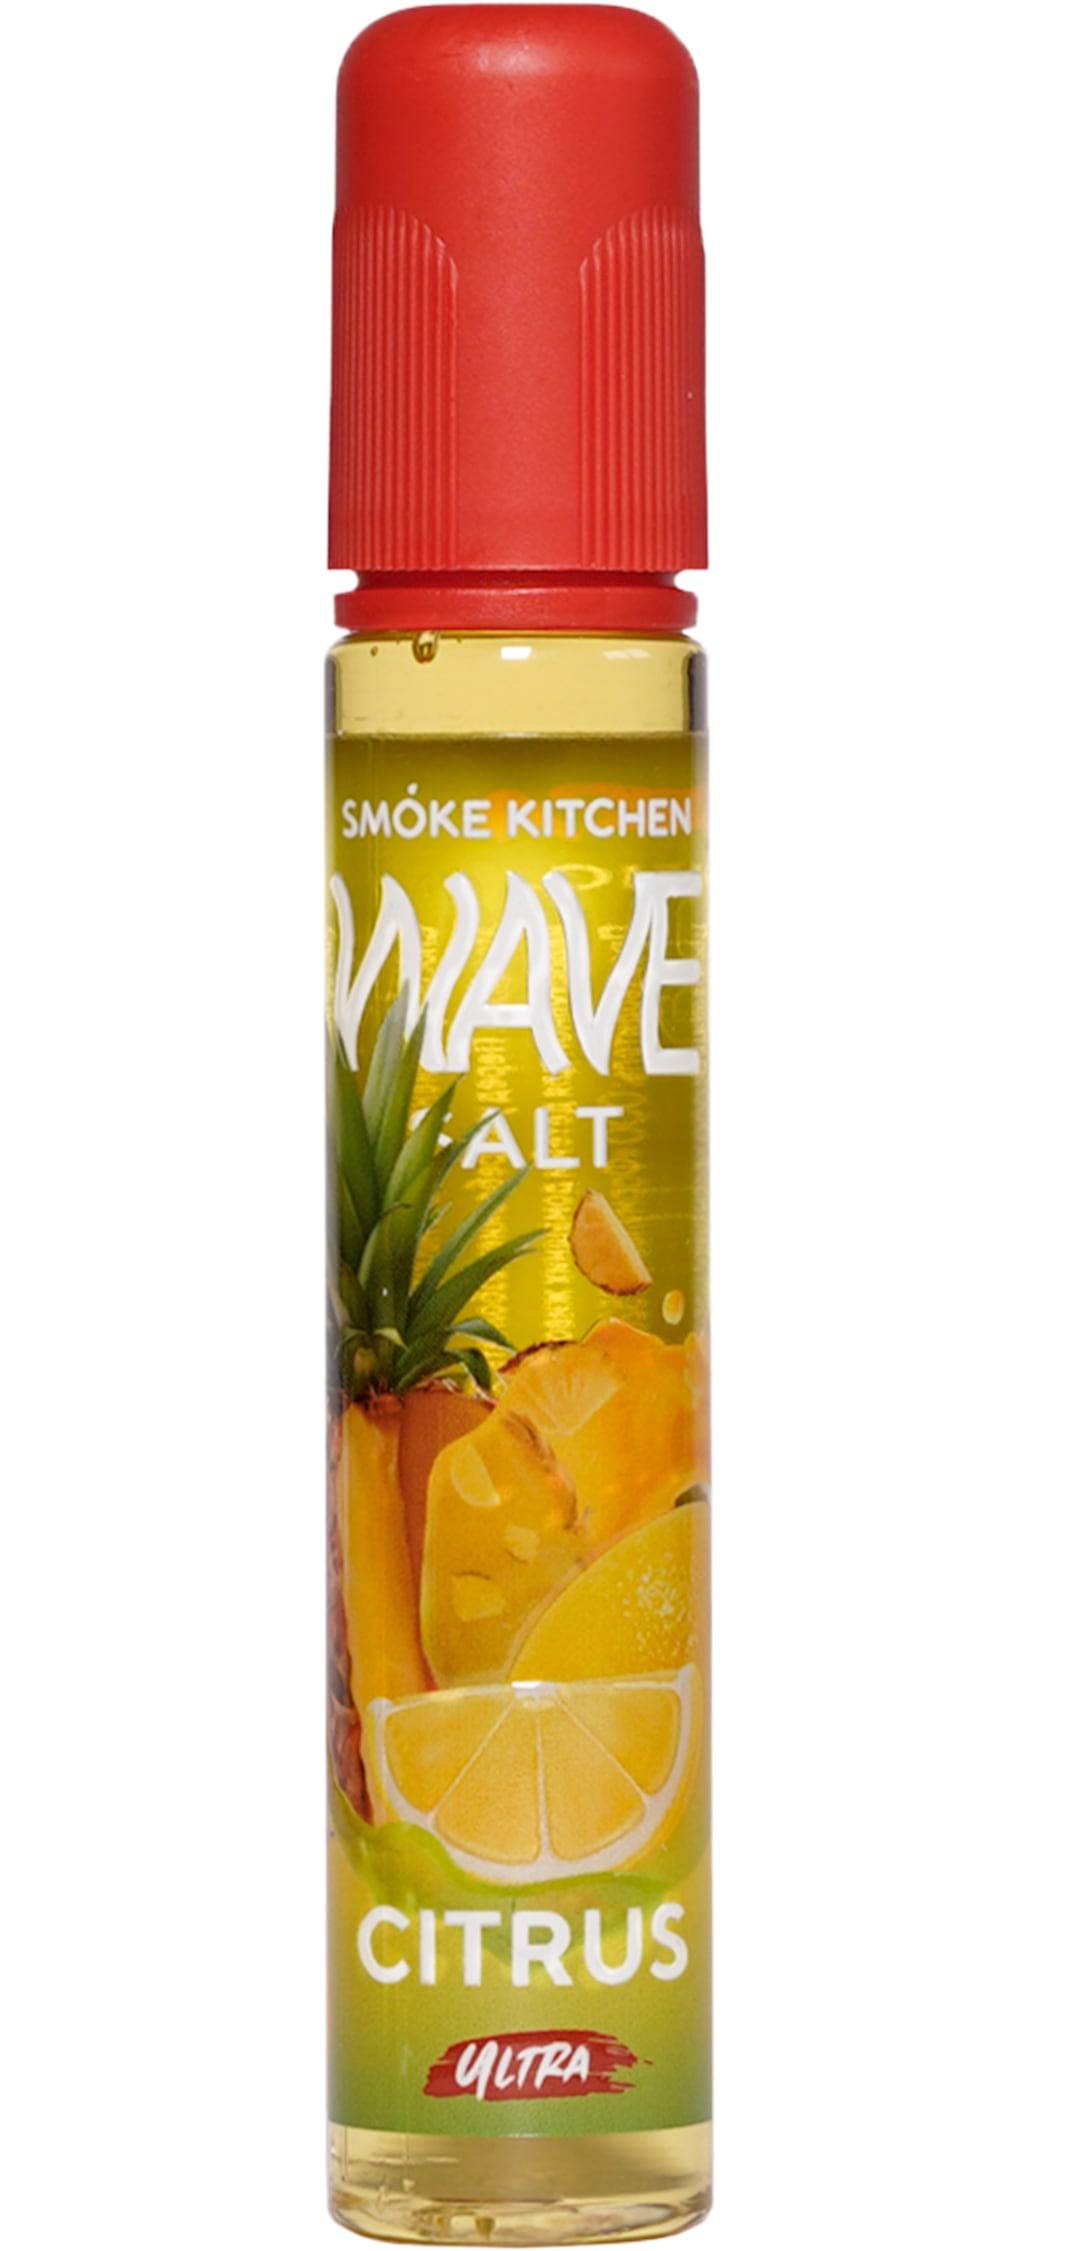  Жидкость SMOKE KITCHEN Wave Salt 30ml Citrus 2% ULTRA от МосТАБАК ОПТ